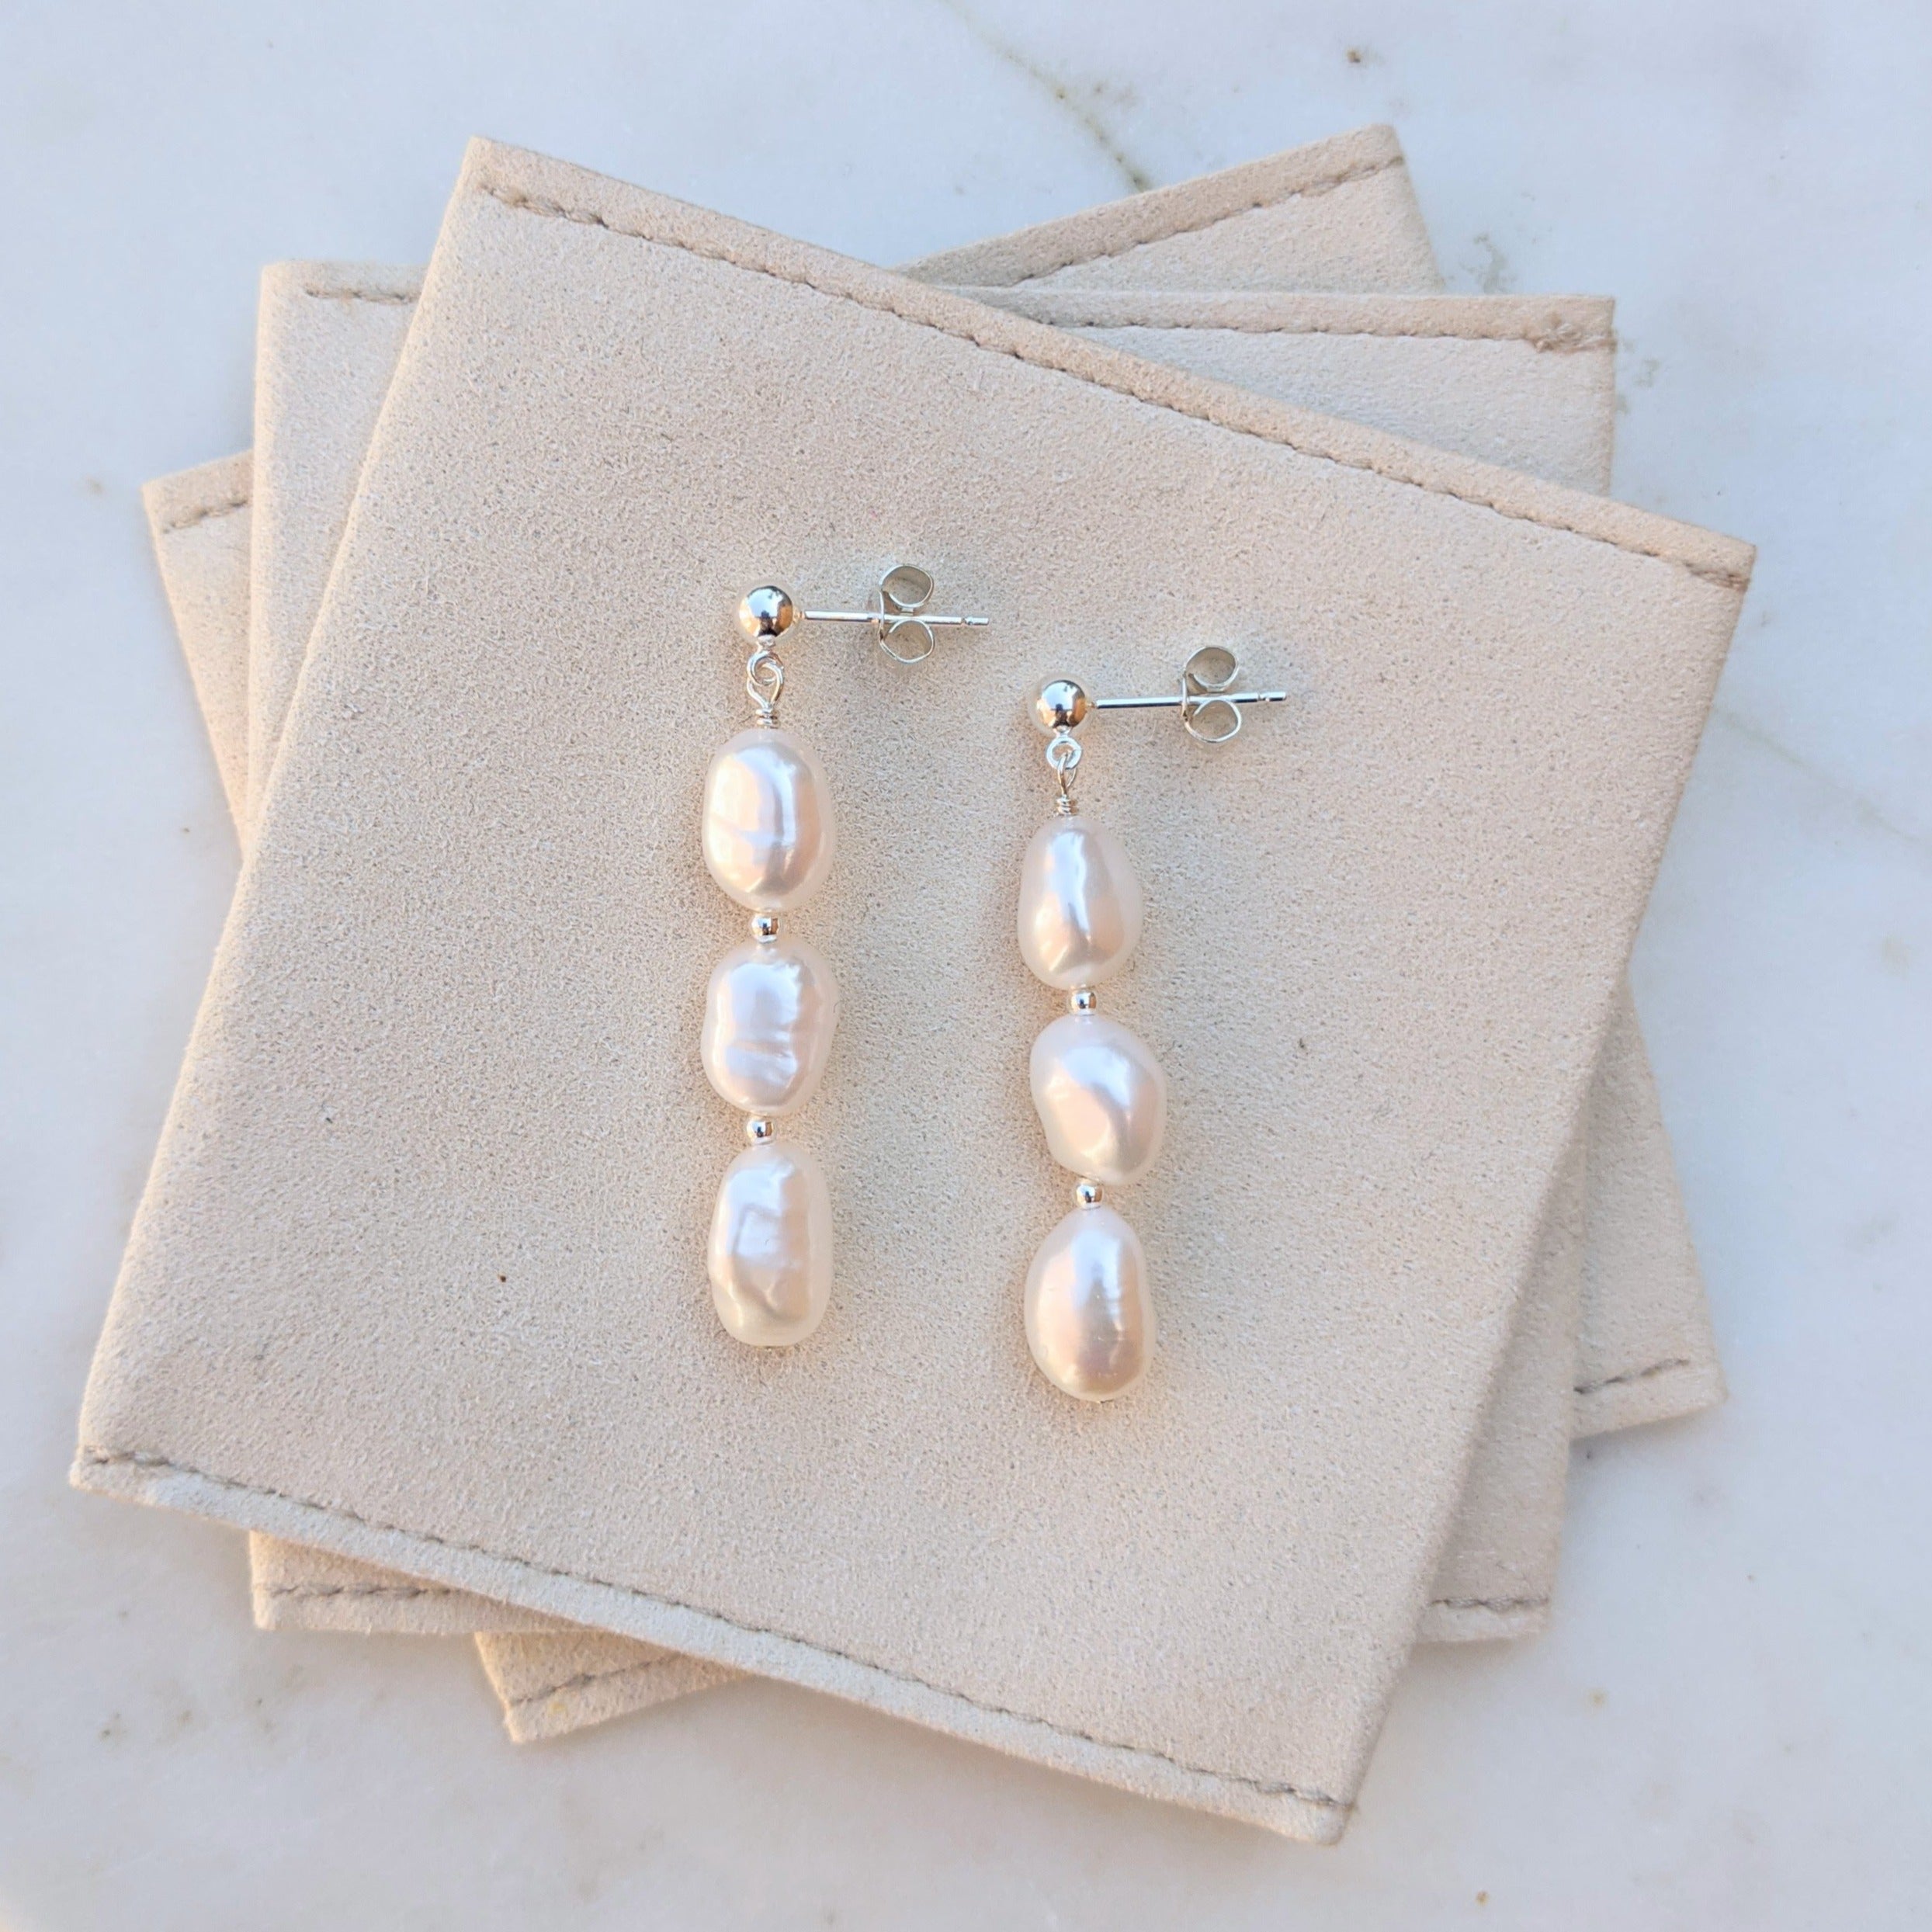 Pearl stud drop earrings in silver